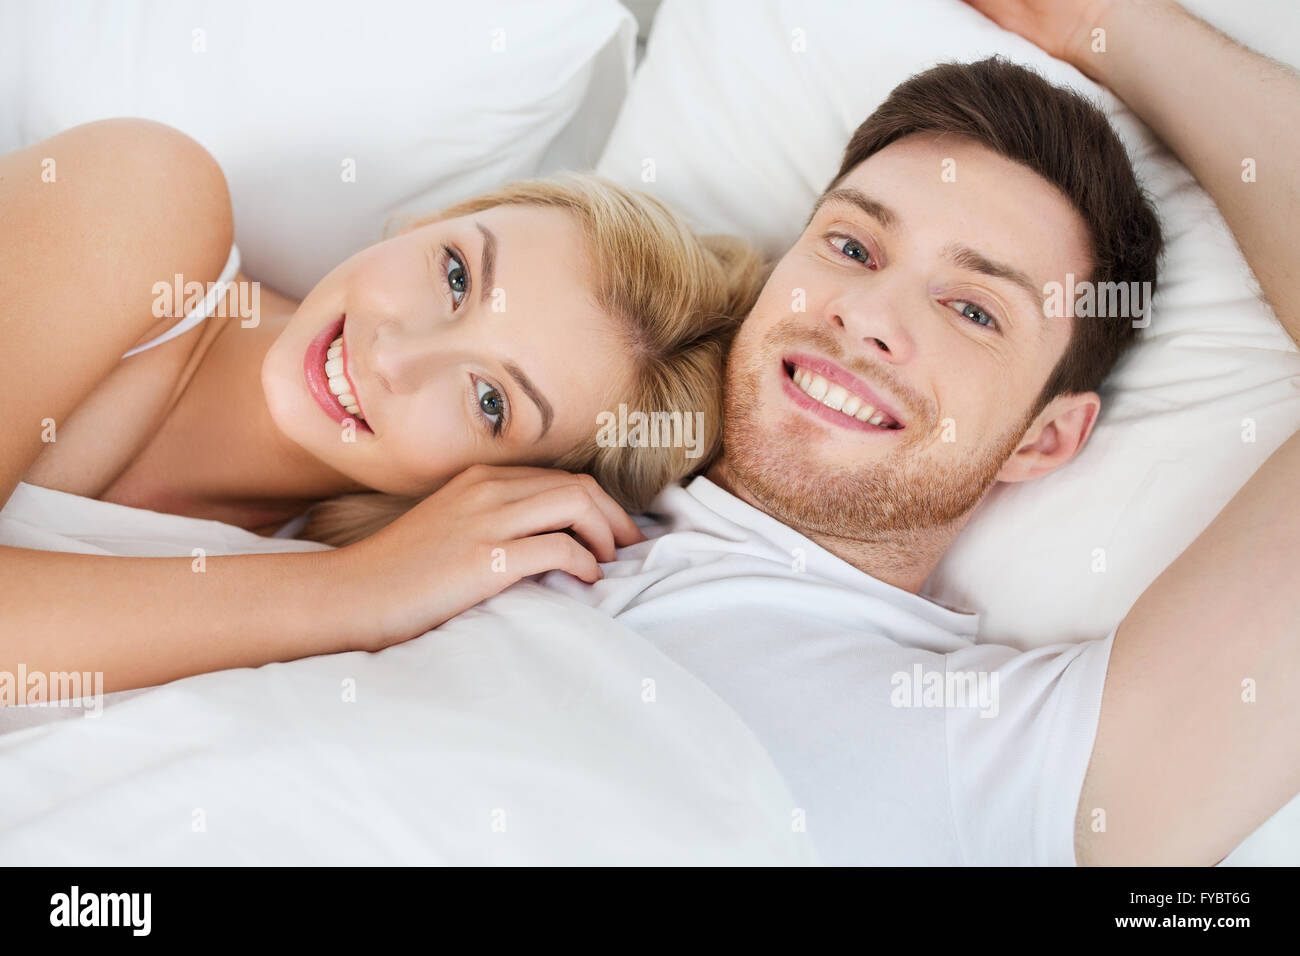 Pareja abrazada en la cama fotografías e imágenes de alta resolución -  Página 4 - Alamy